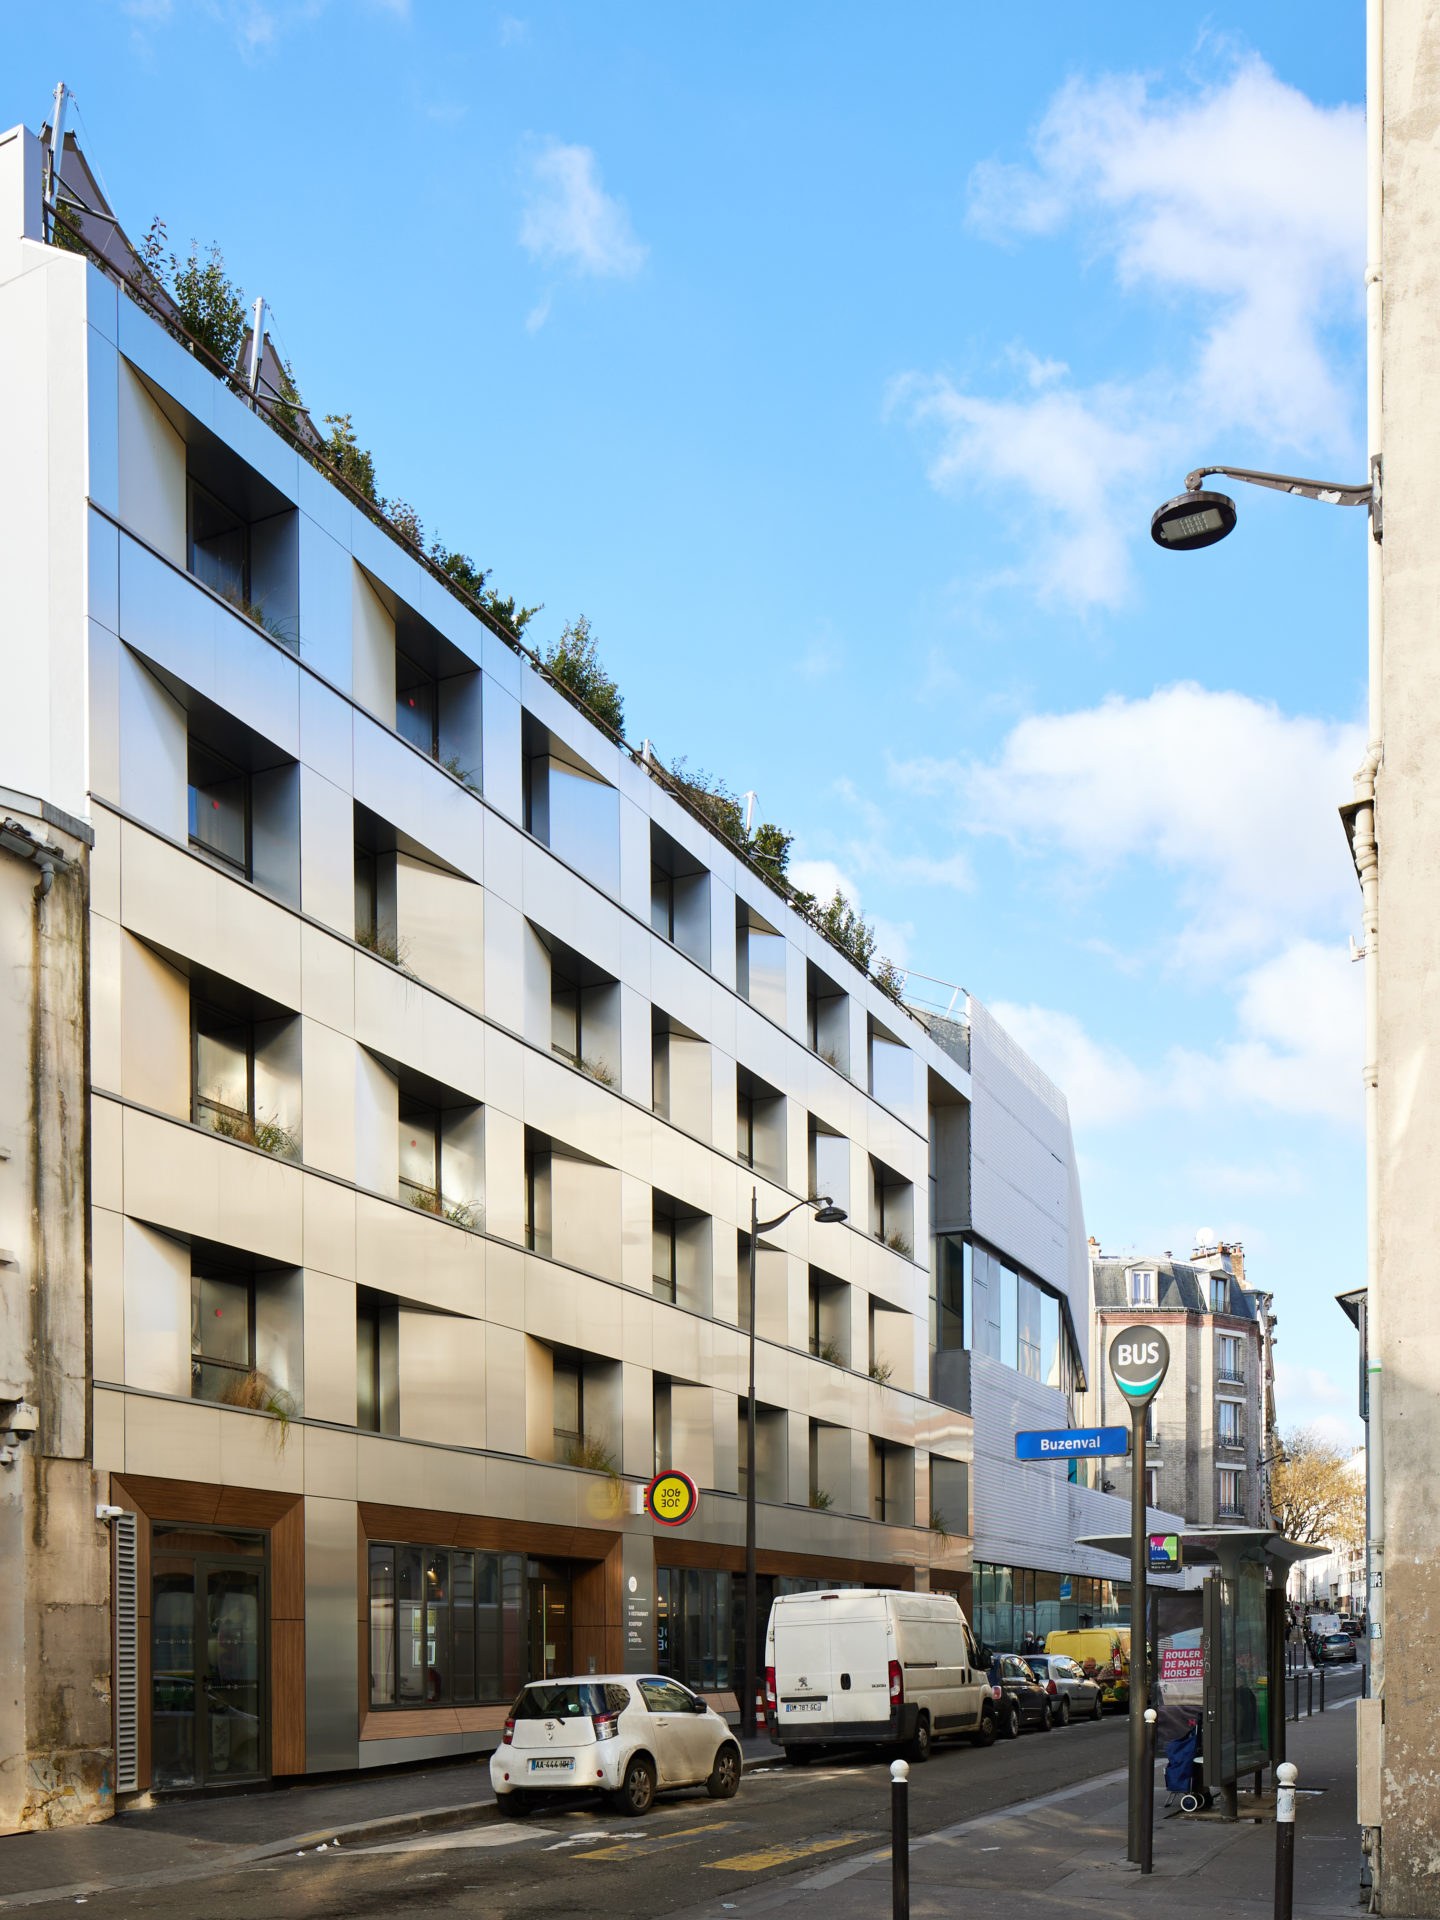 Façade de l'immeuble Buzenval à Paris depuis la rue et ciel bleu